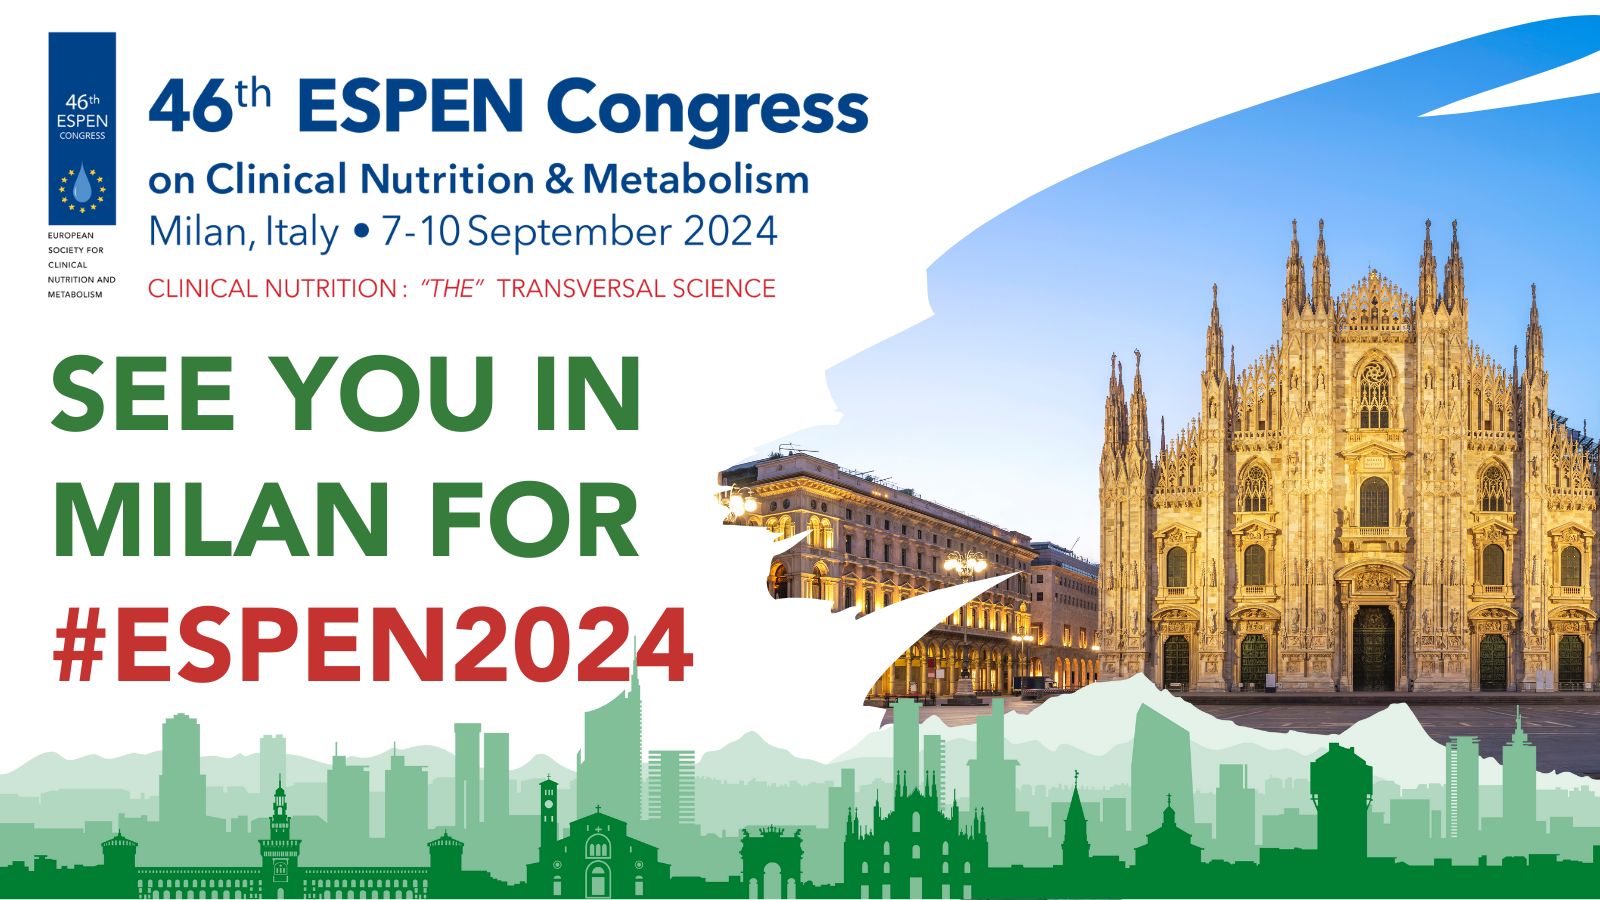 46th ESPEN Congress | 7-10 September 2024 | Milan, Italy, Milano, Lombardia, Italy